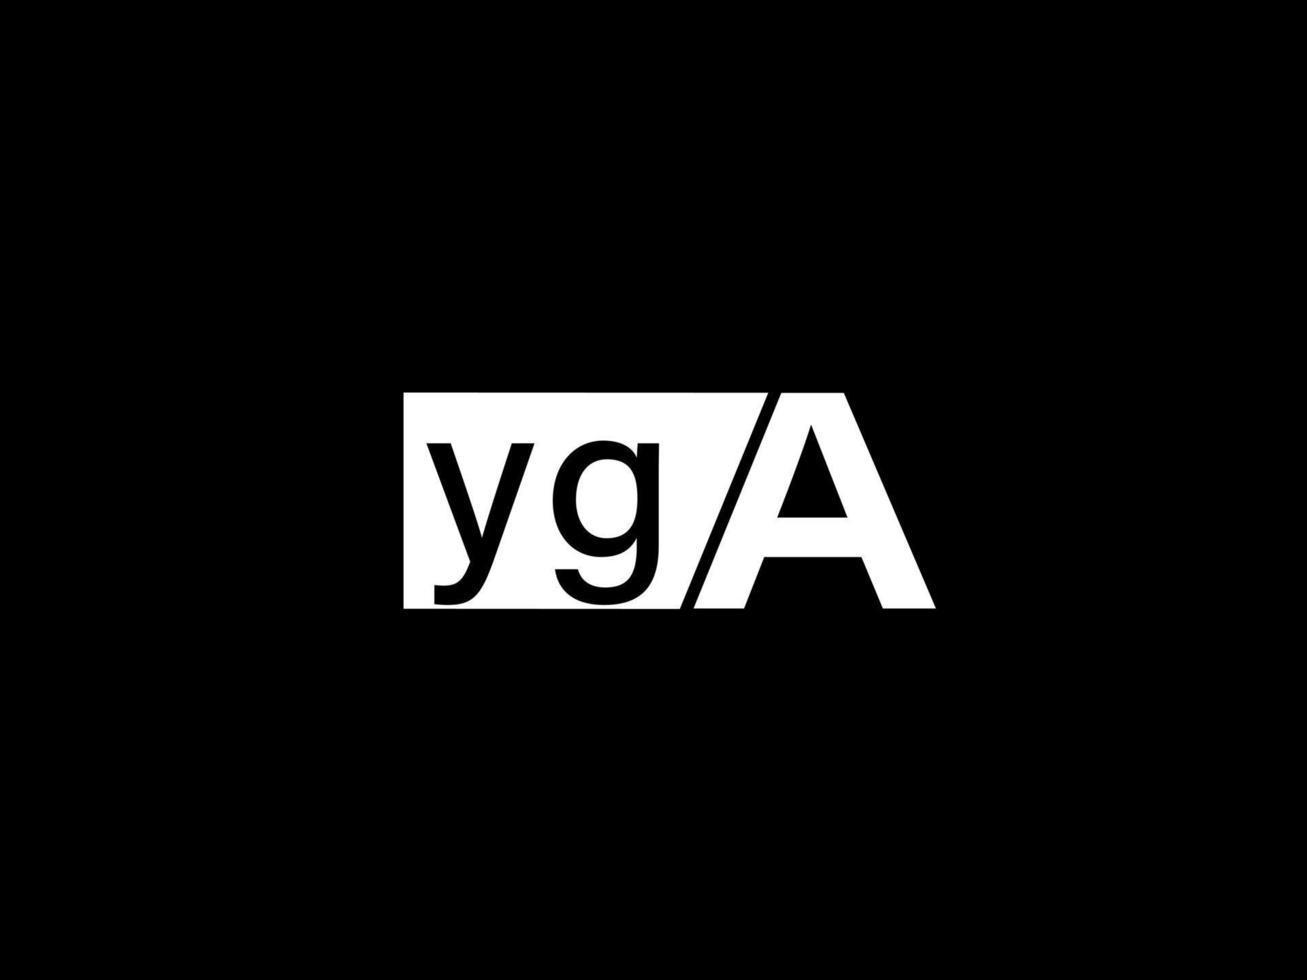 logotipo yga e arte vetorial de design gráfico, ícones isolados em fundo preto vetor